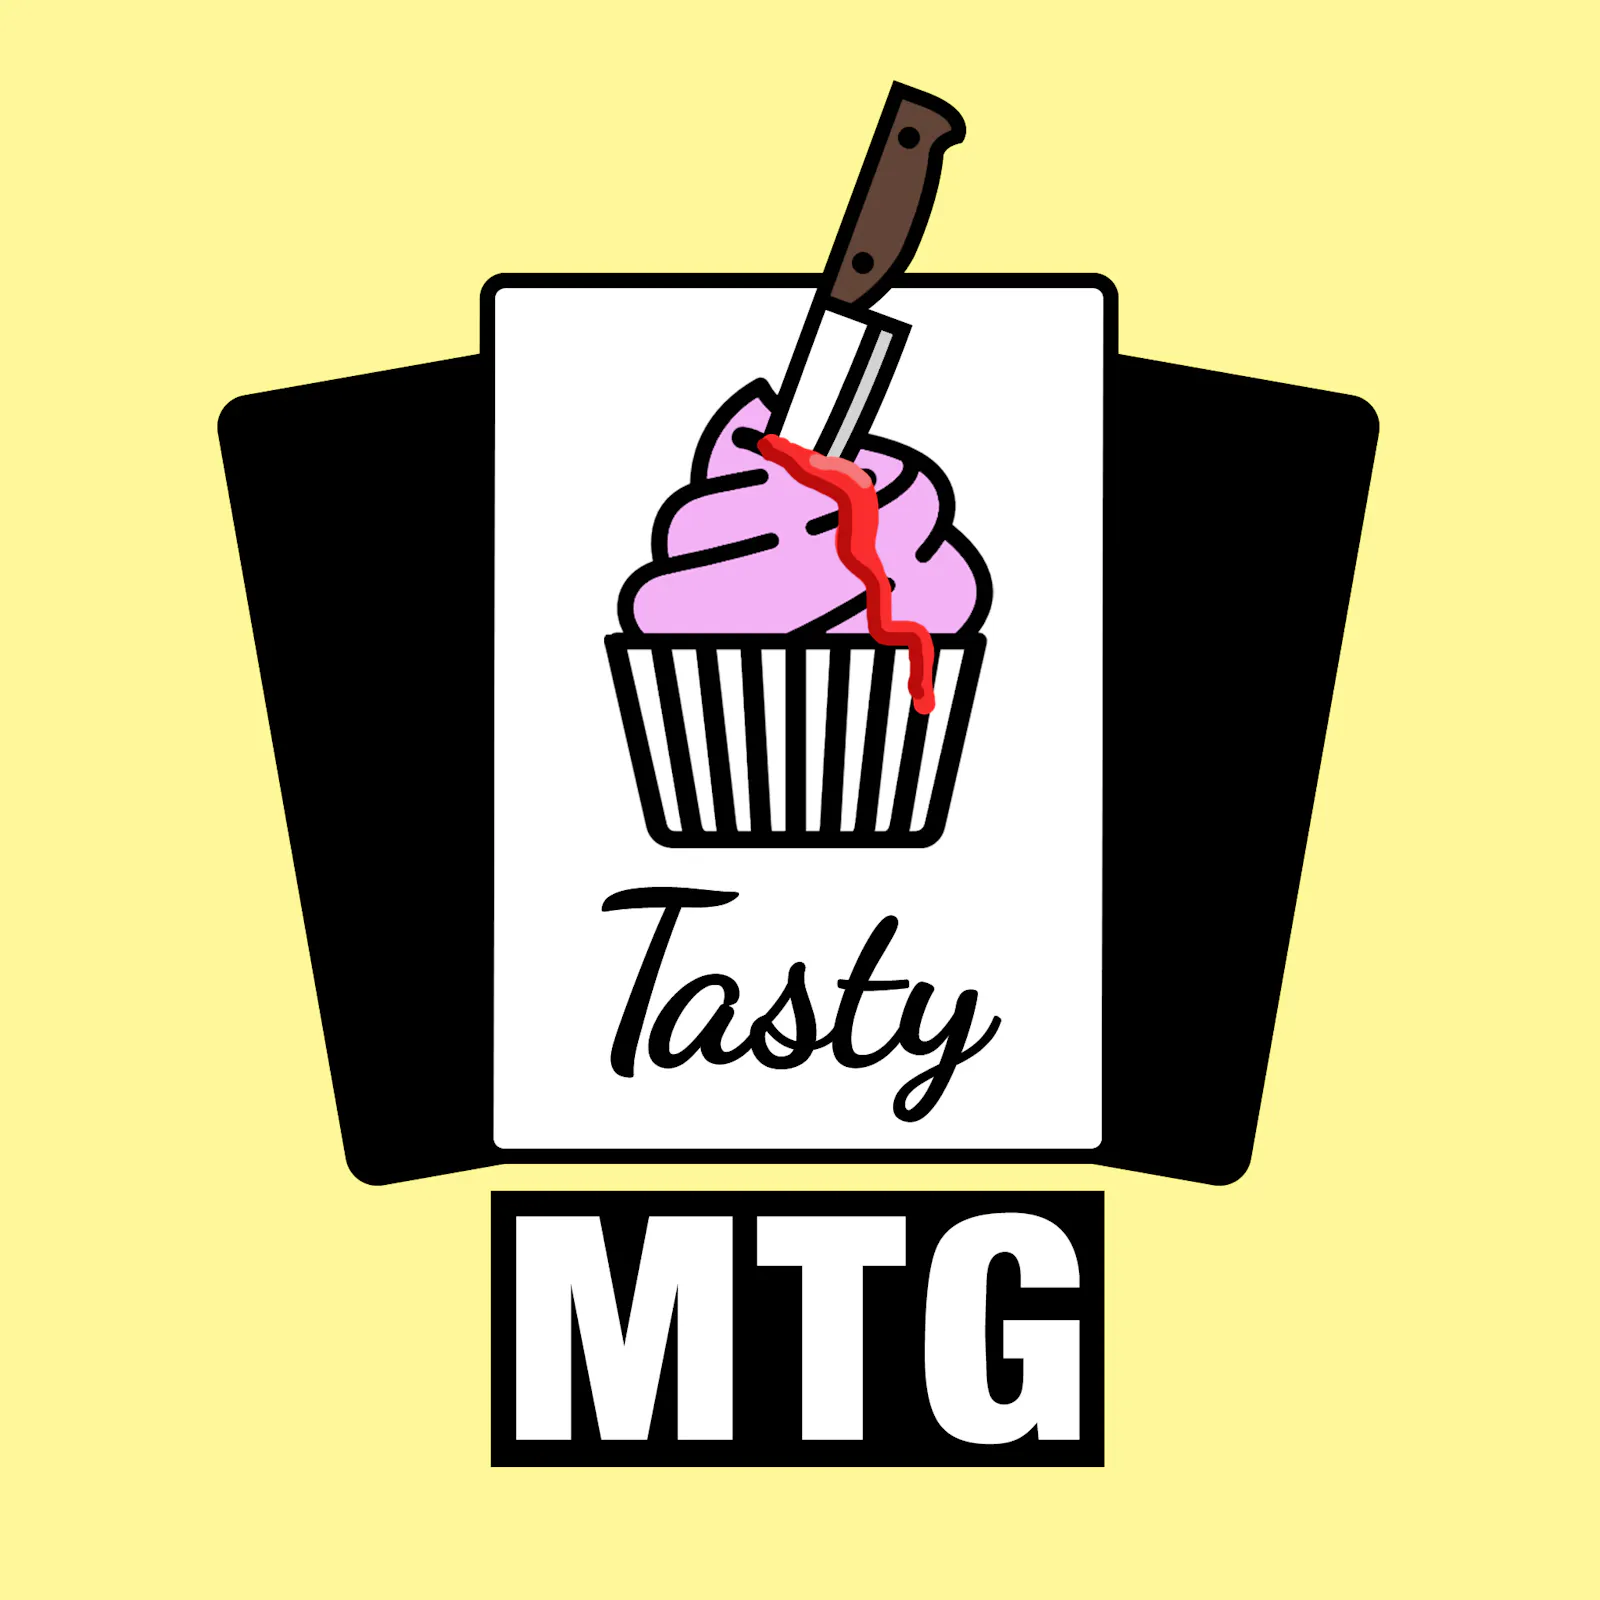 Das Cover zur aktuellen Folge: Der Tasty-MTG-Muffin hat ein Messer in sich stecken und blutet Zuckerguss